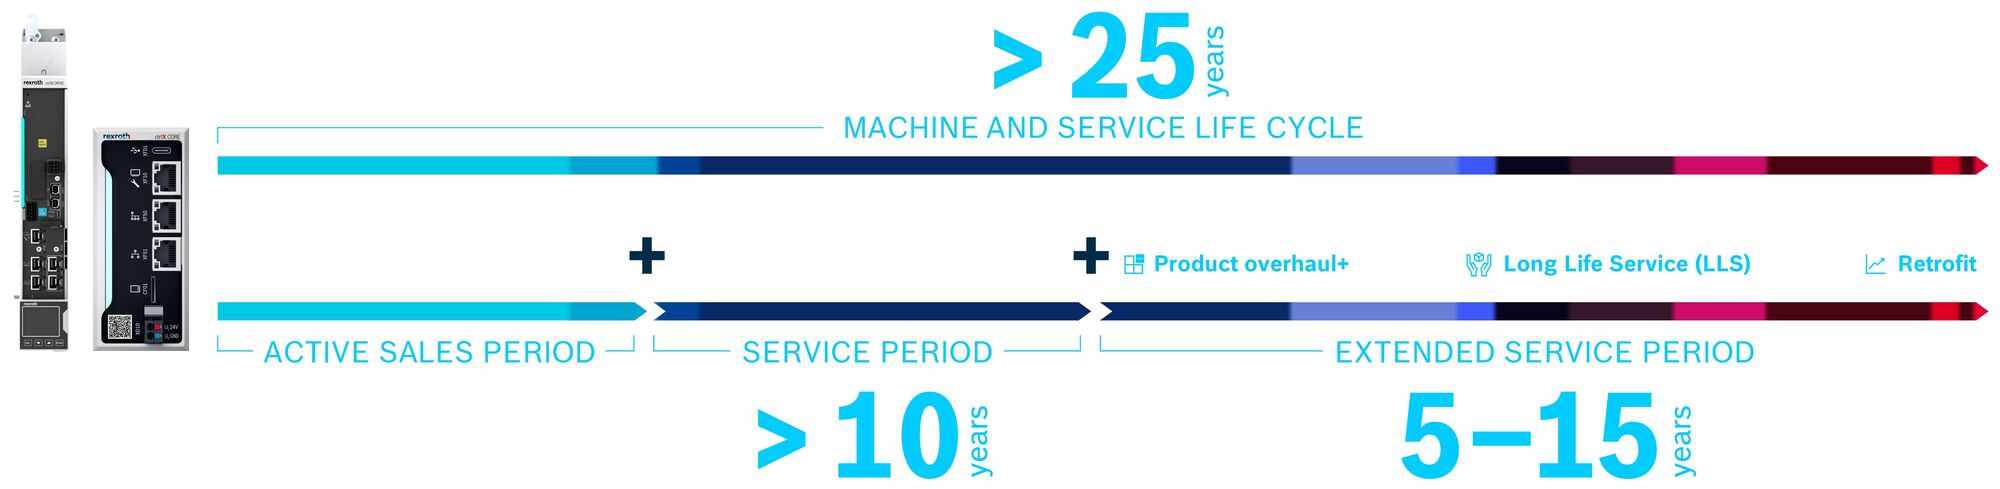 Grafika przedstawia cykl życia produktów firmy Bosch Rexroth i sposób, w jaki można go wydłużyć do 25 lat dzięki takim działaniom jak remont produktu, modernizacja i Long Life Service.